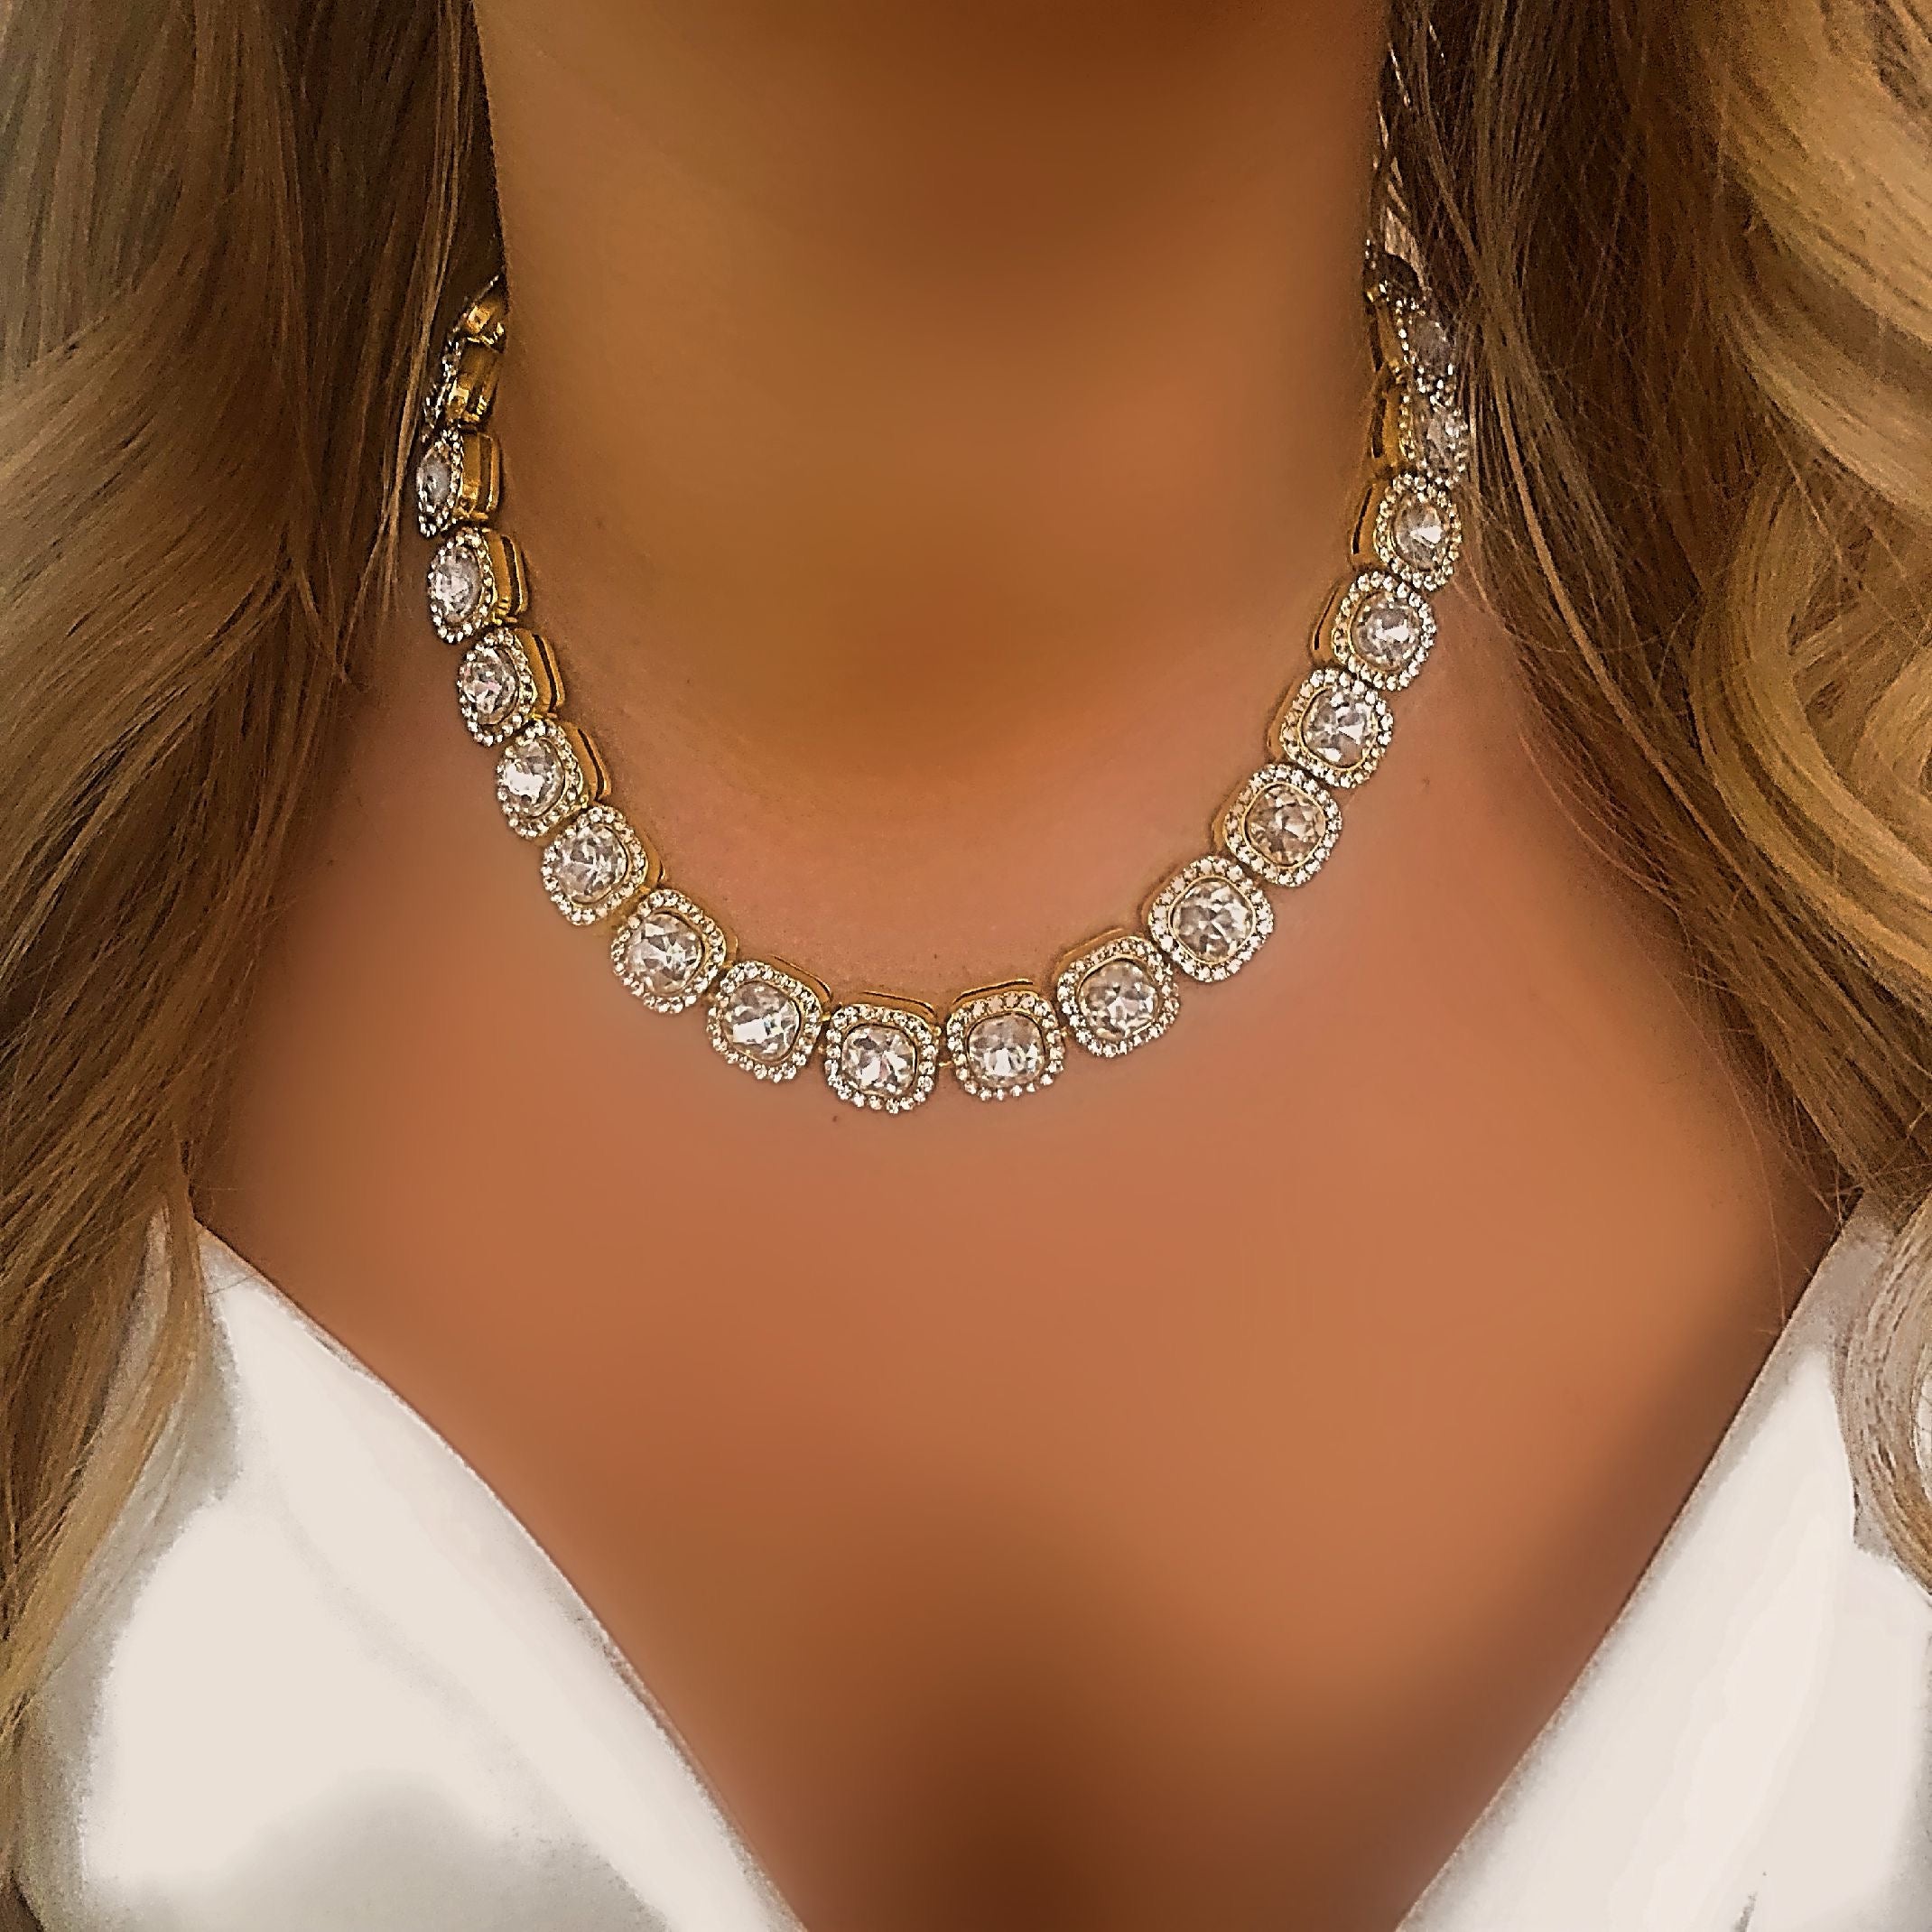 Diamond tennis necklace 